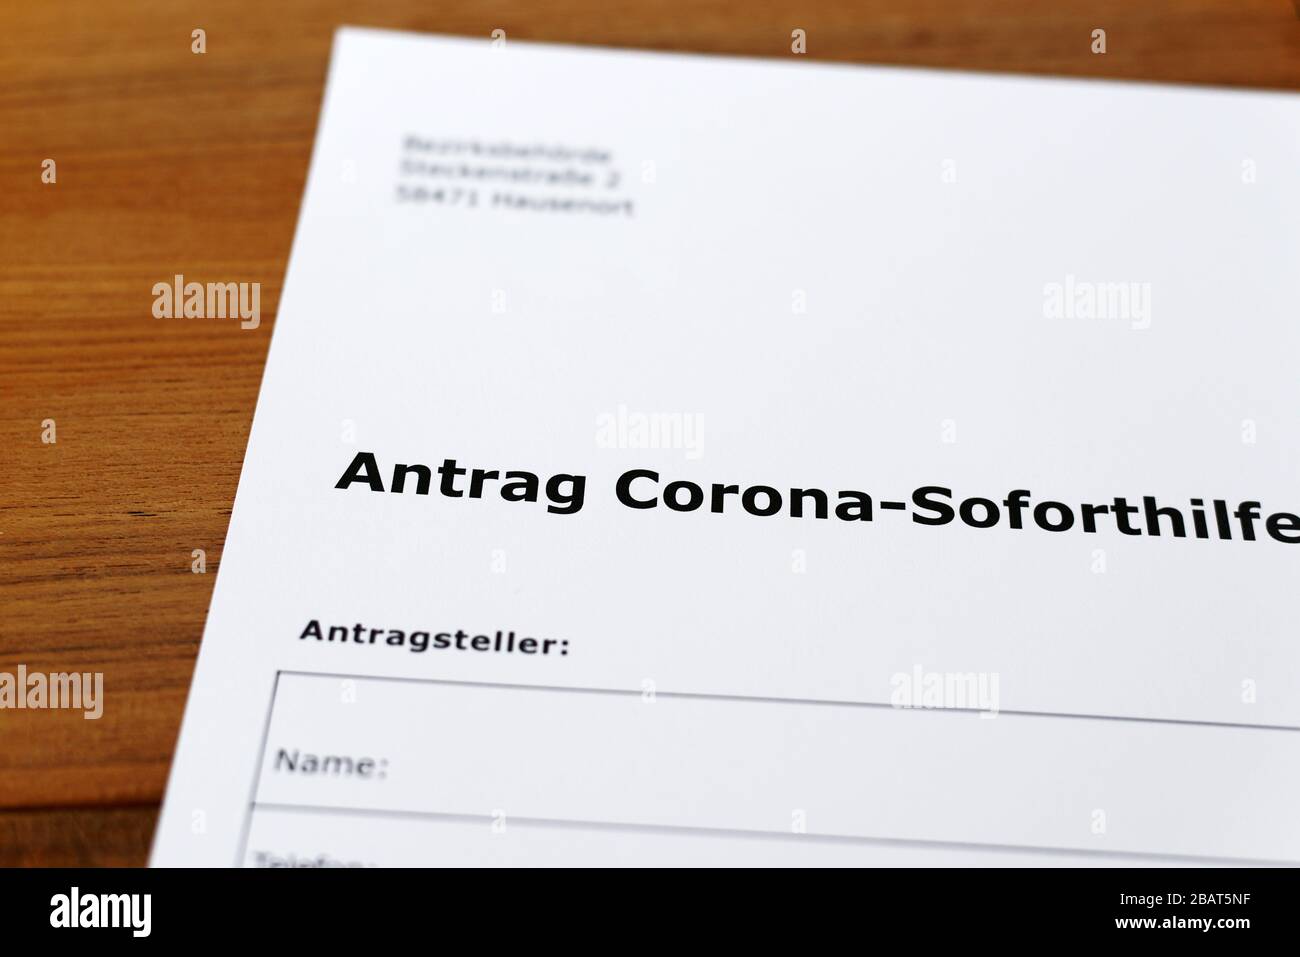 Une feuille de papier avec les mots allemands 'Antrag Corona Soforsilfe' - Traduction en englisch: Demande de corona aide immédiate. Banque D'Images